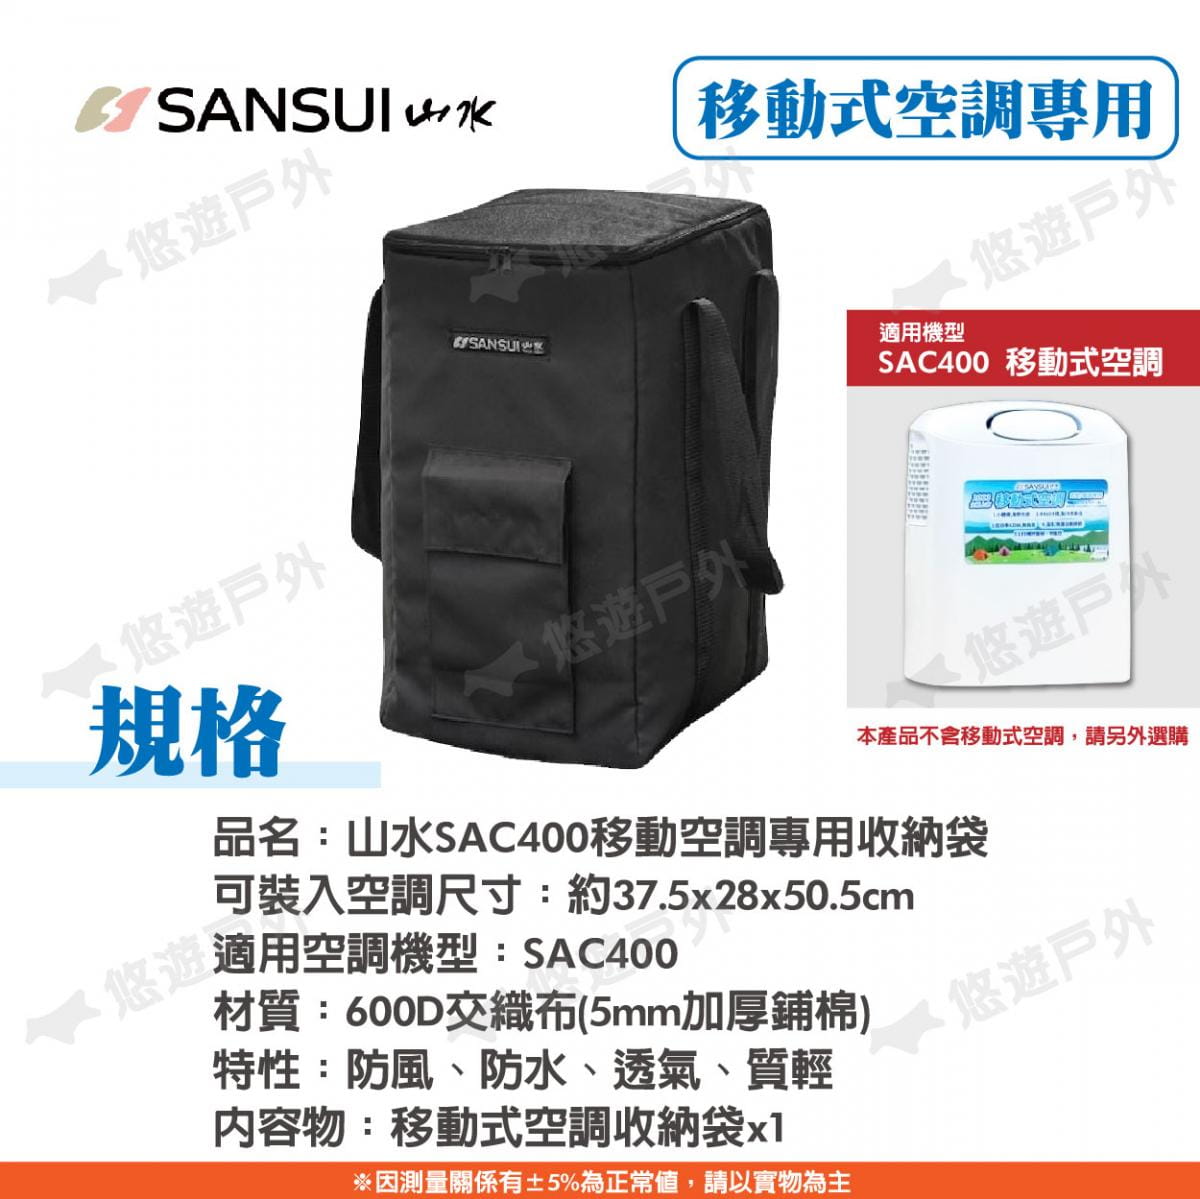 【SANSUI山水】移動式空調專用收納袋 SAC400 悠遊戶外 4